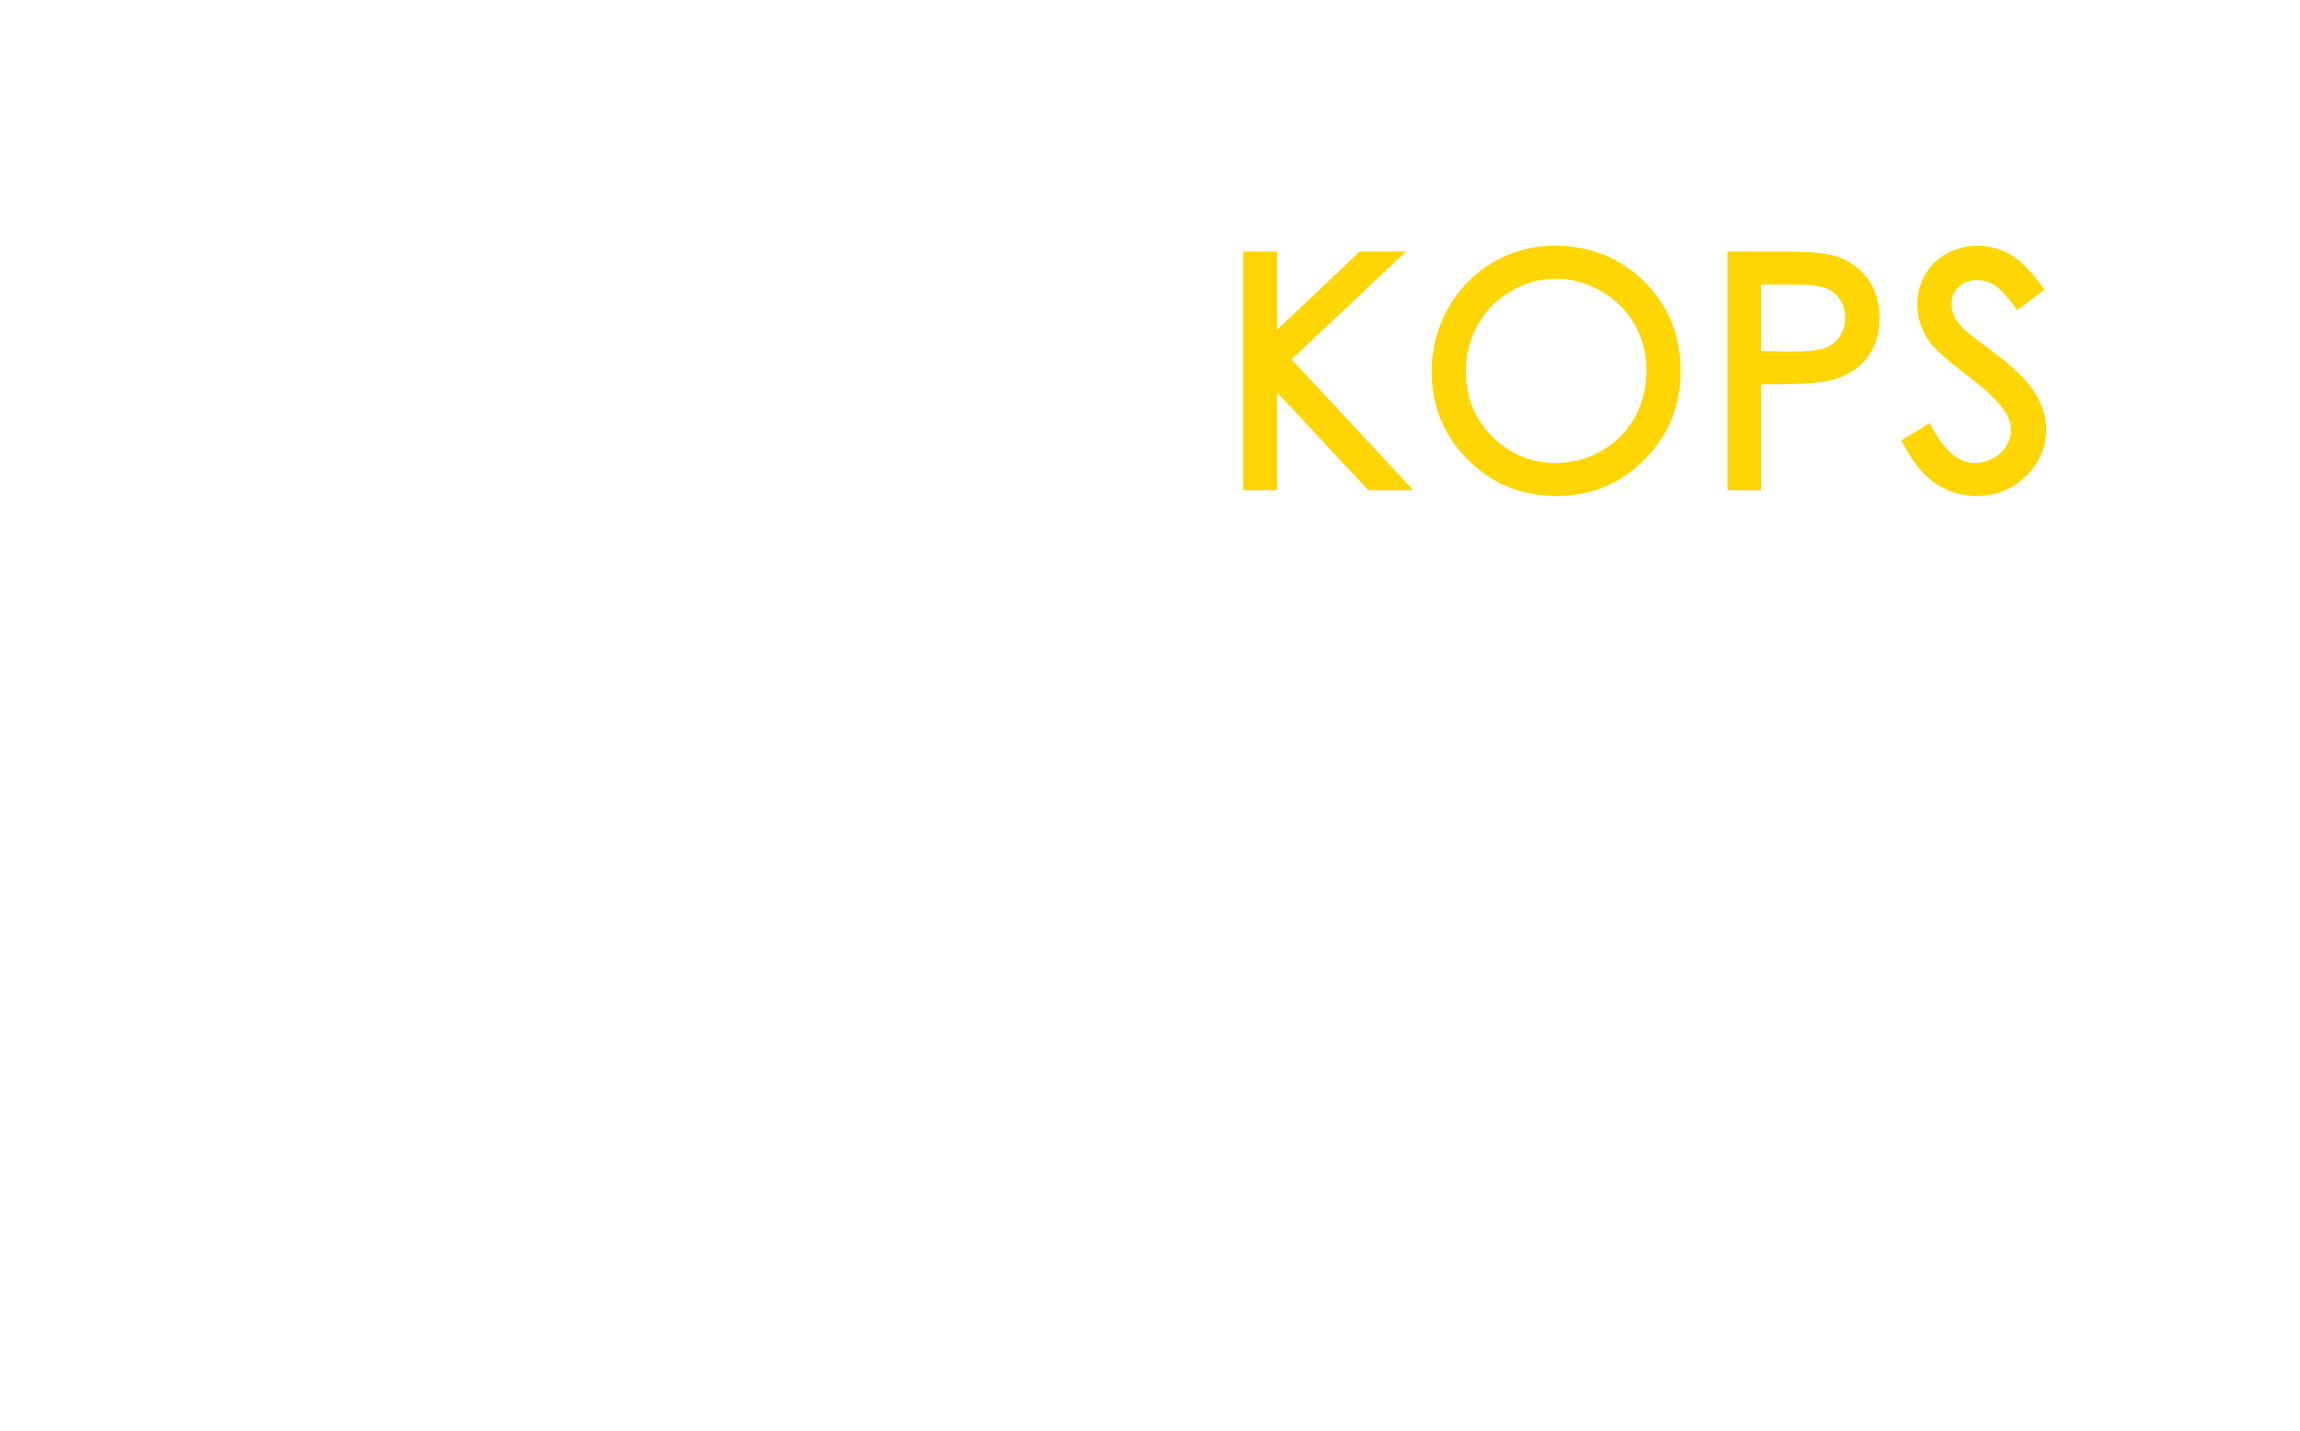 Kops Records